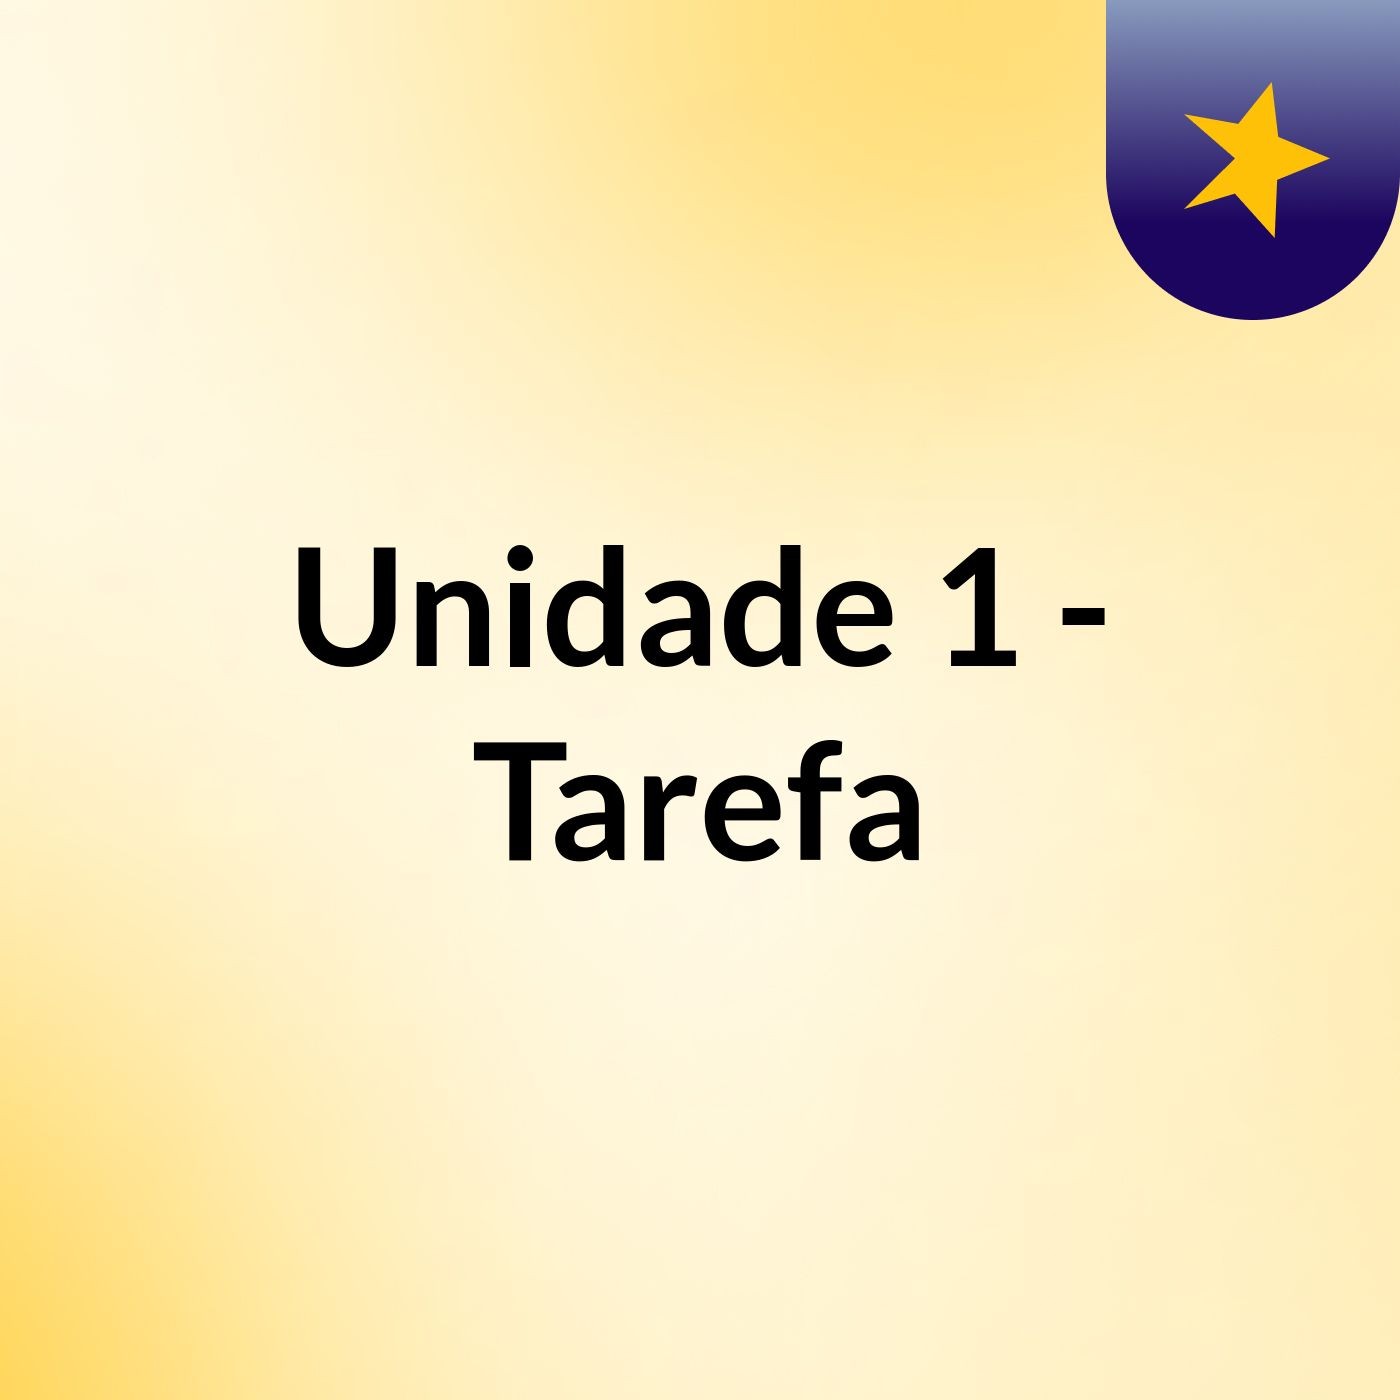 Unidade 1 - Tarefa